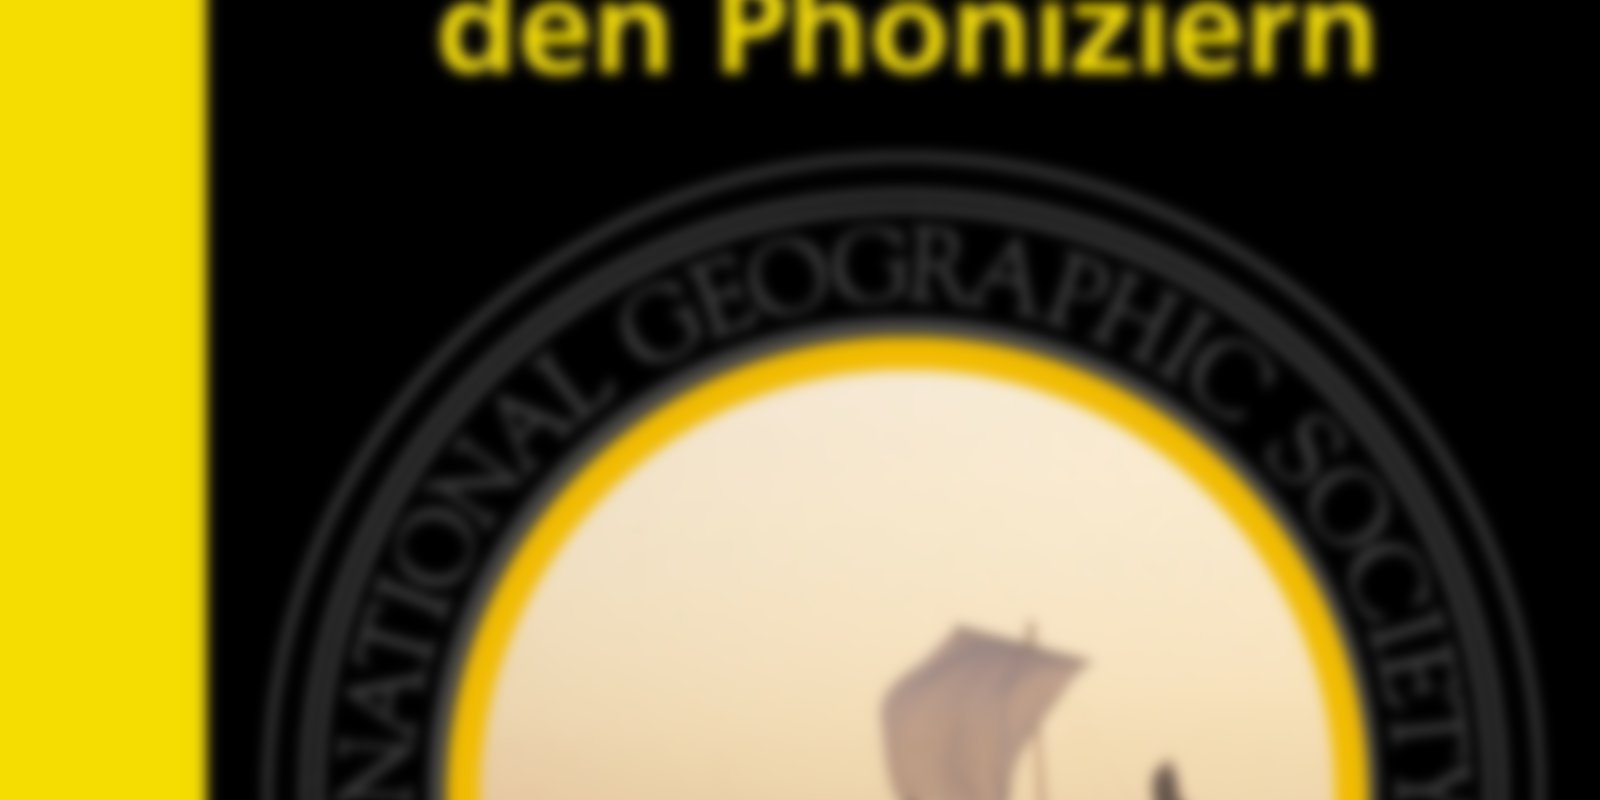 National Geographic - Auf der Suche nach den Phöniziern